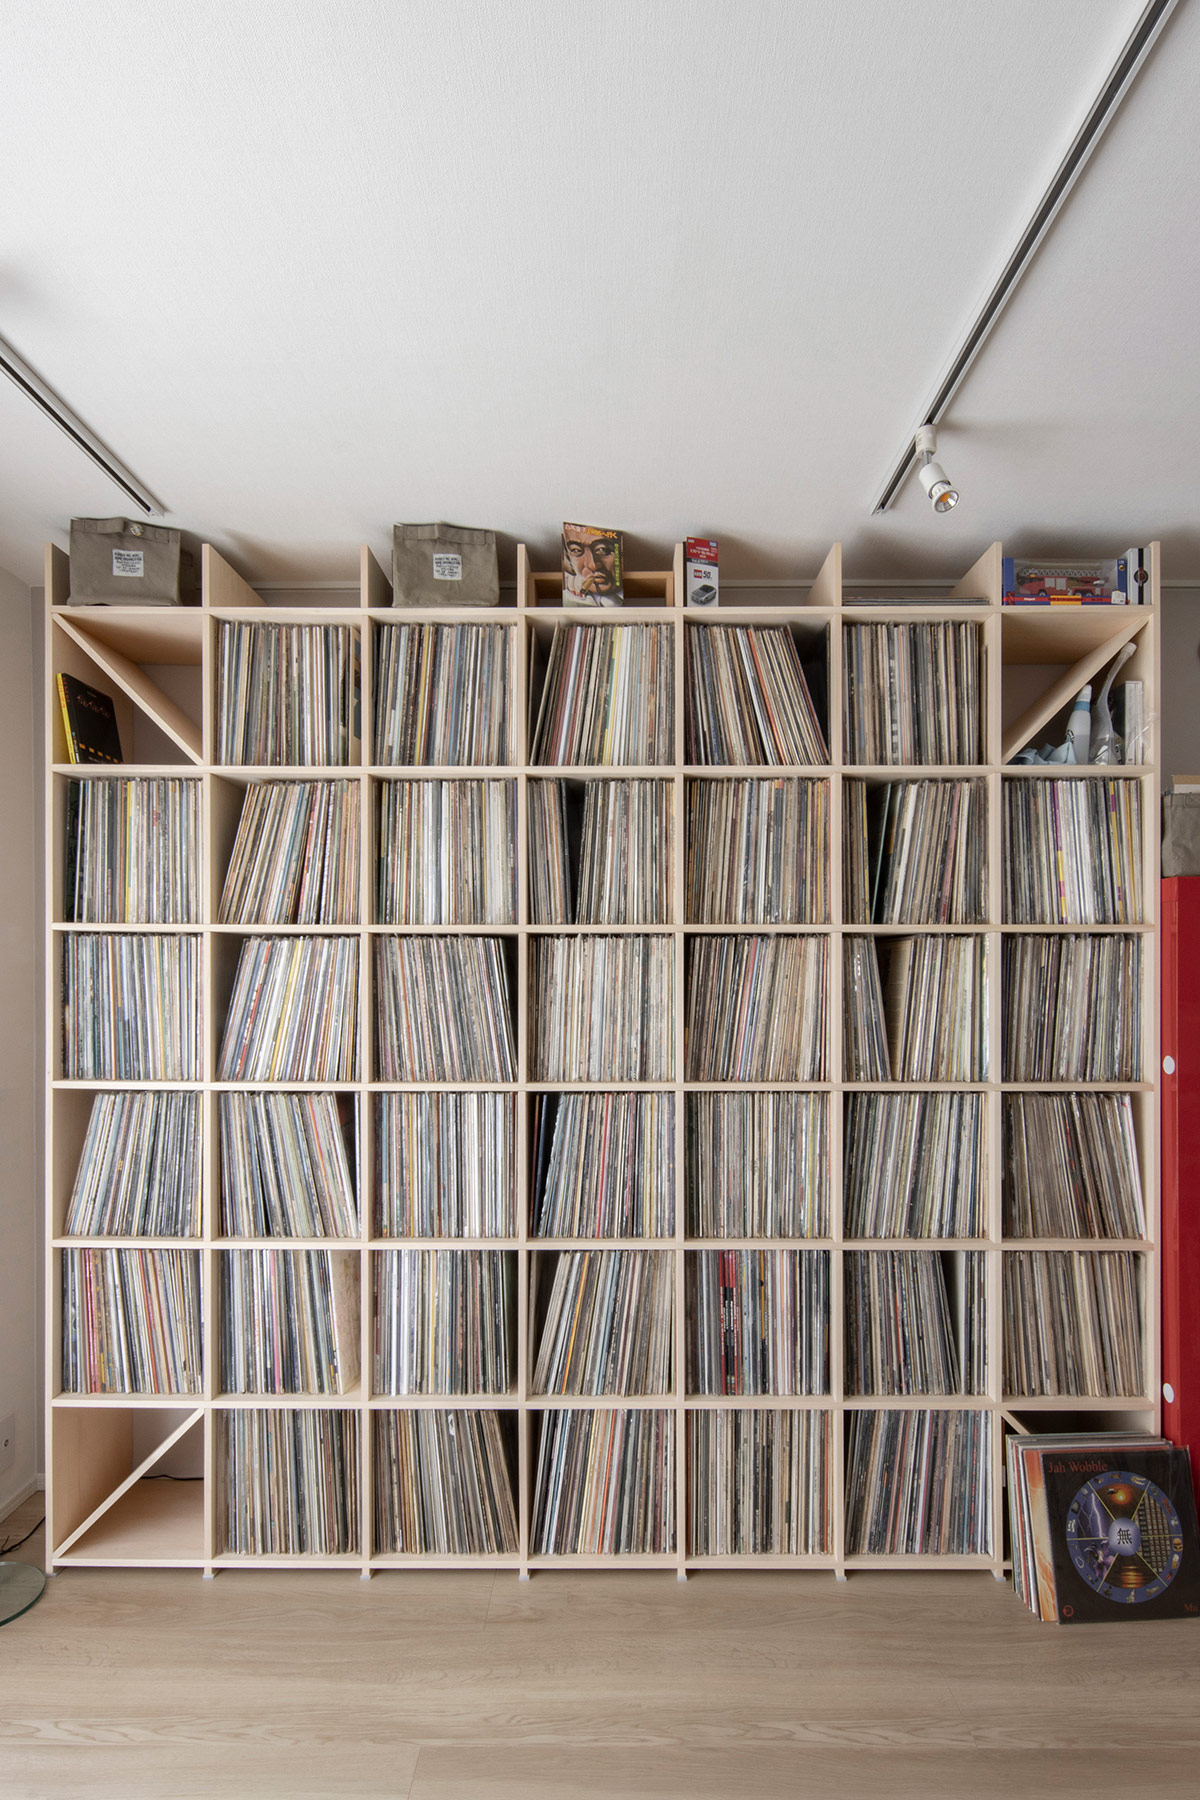 壁一面のレコード棚